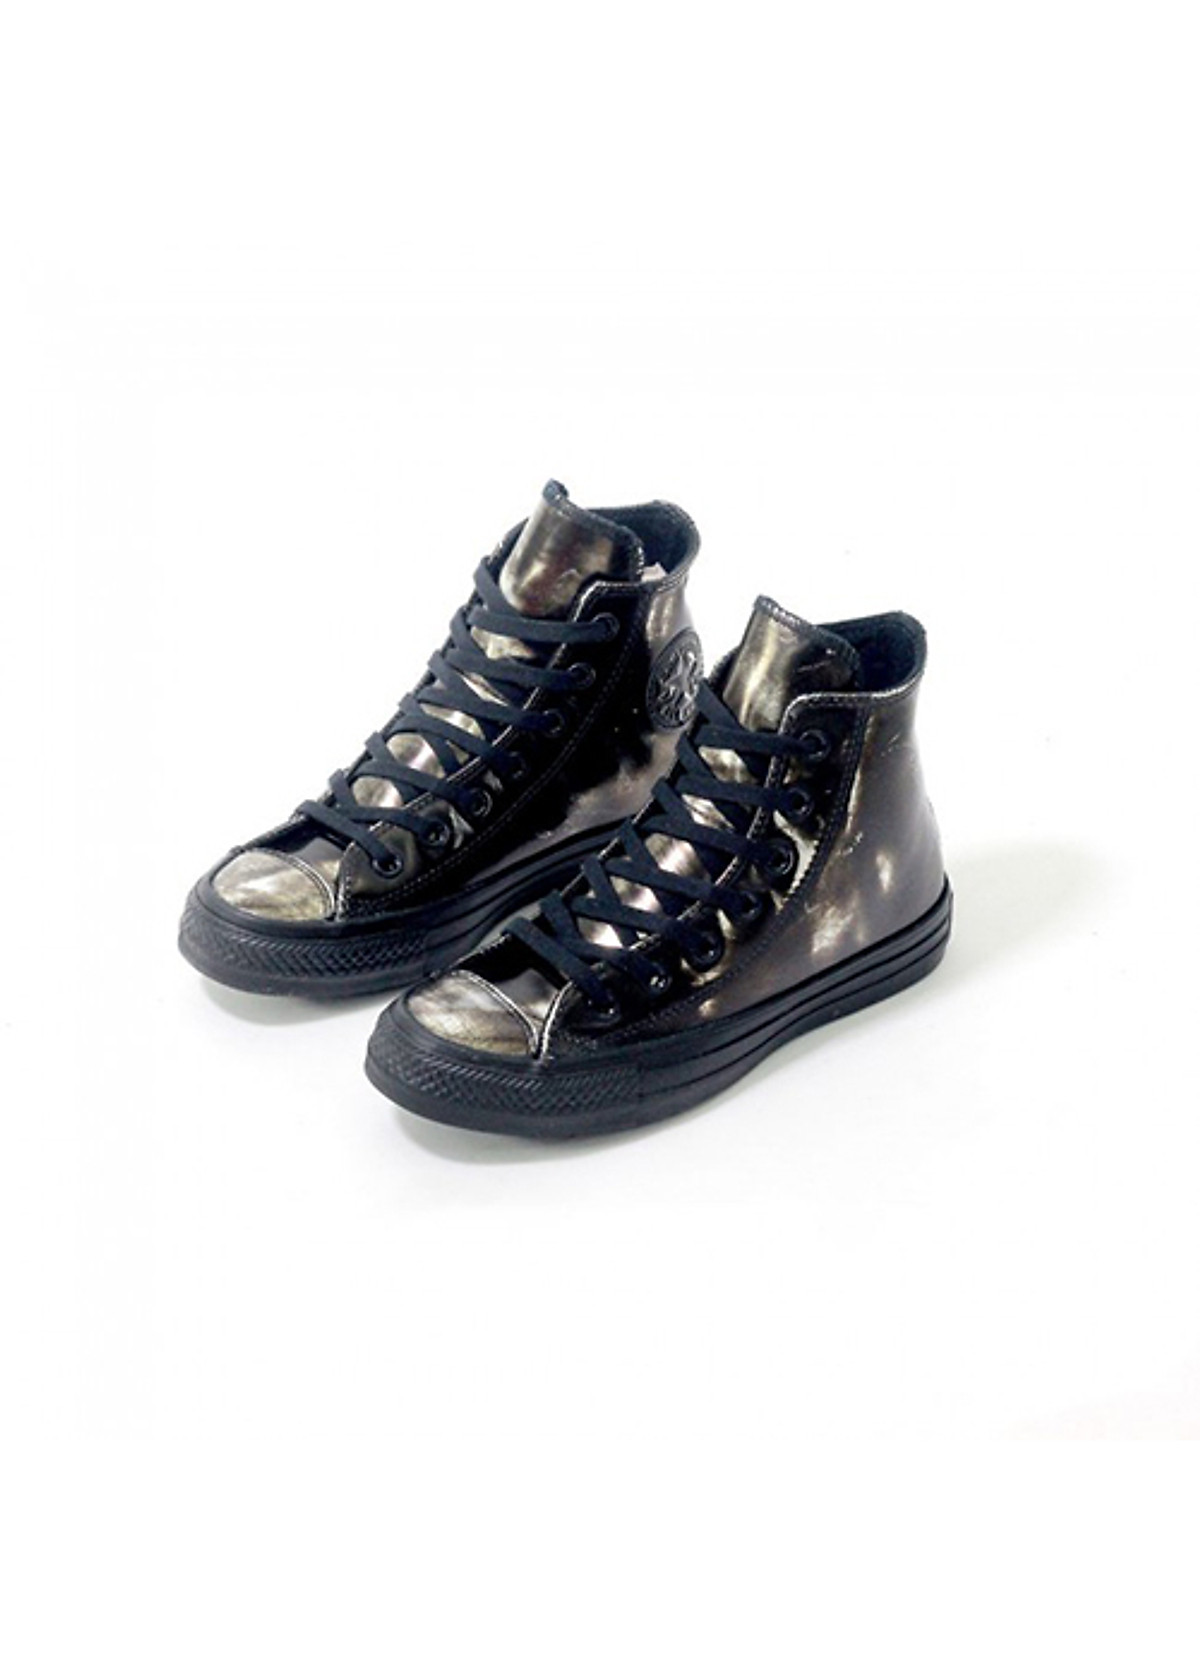 Mua Giày Sneaker Unisex CHUCK TAYLOR ALL STAR BRUSH OFF LEATHER 553301  Fullbox ( Gồm giày, túi đựng giày, hộp đựng )